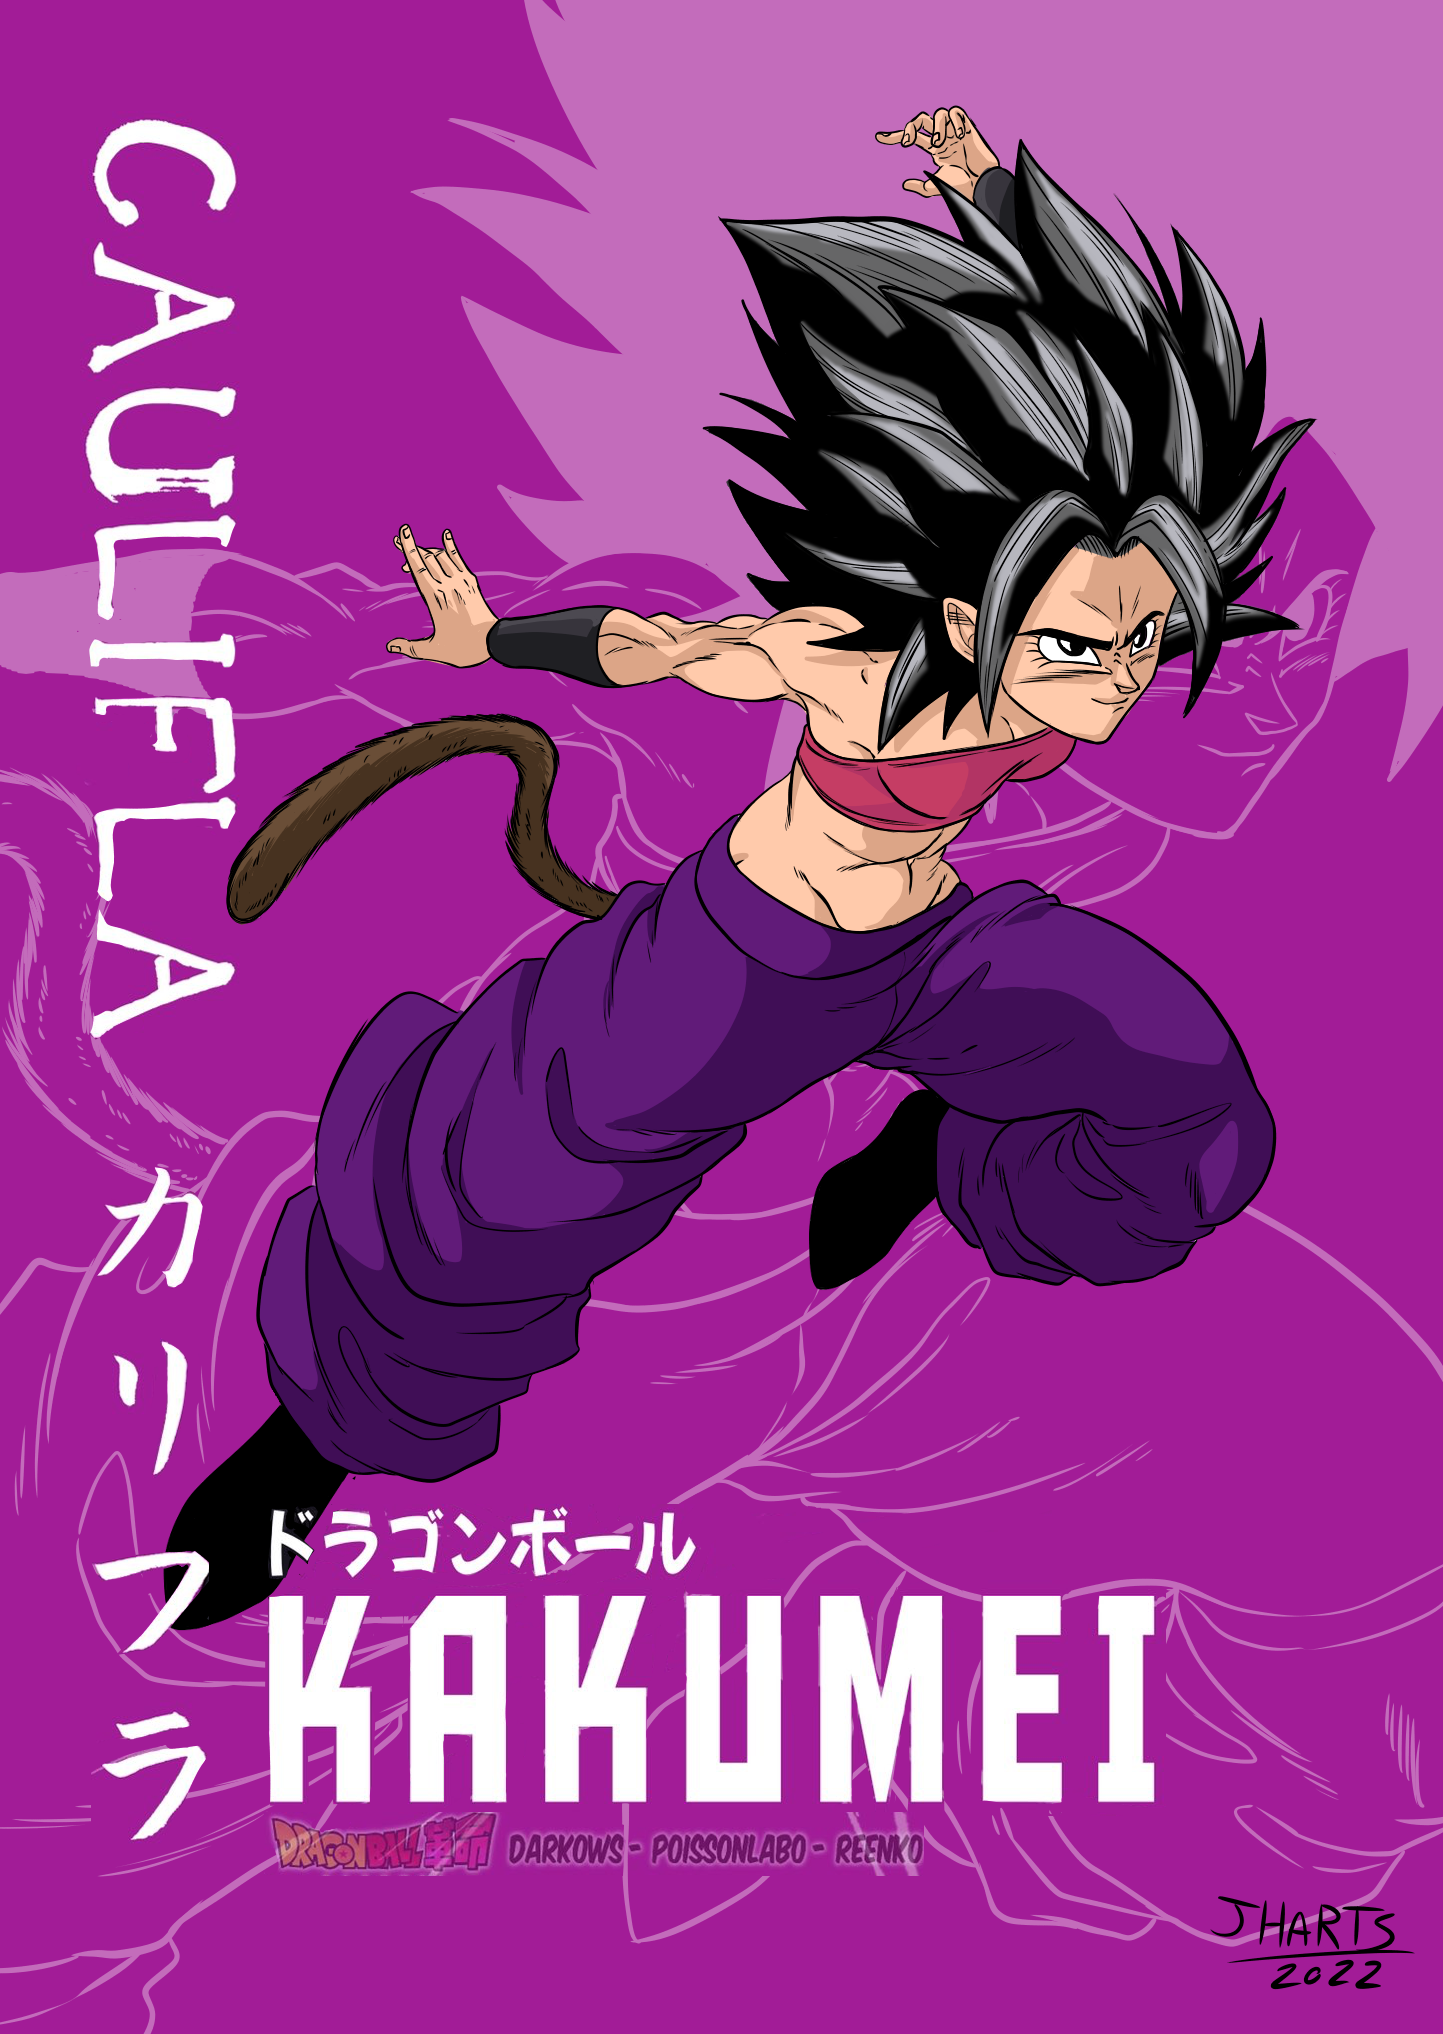 What is Dragon Ball Kakumei? Is it official or is it just a fan